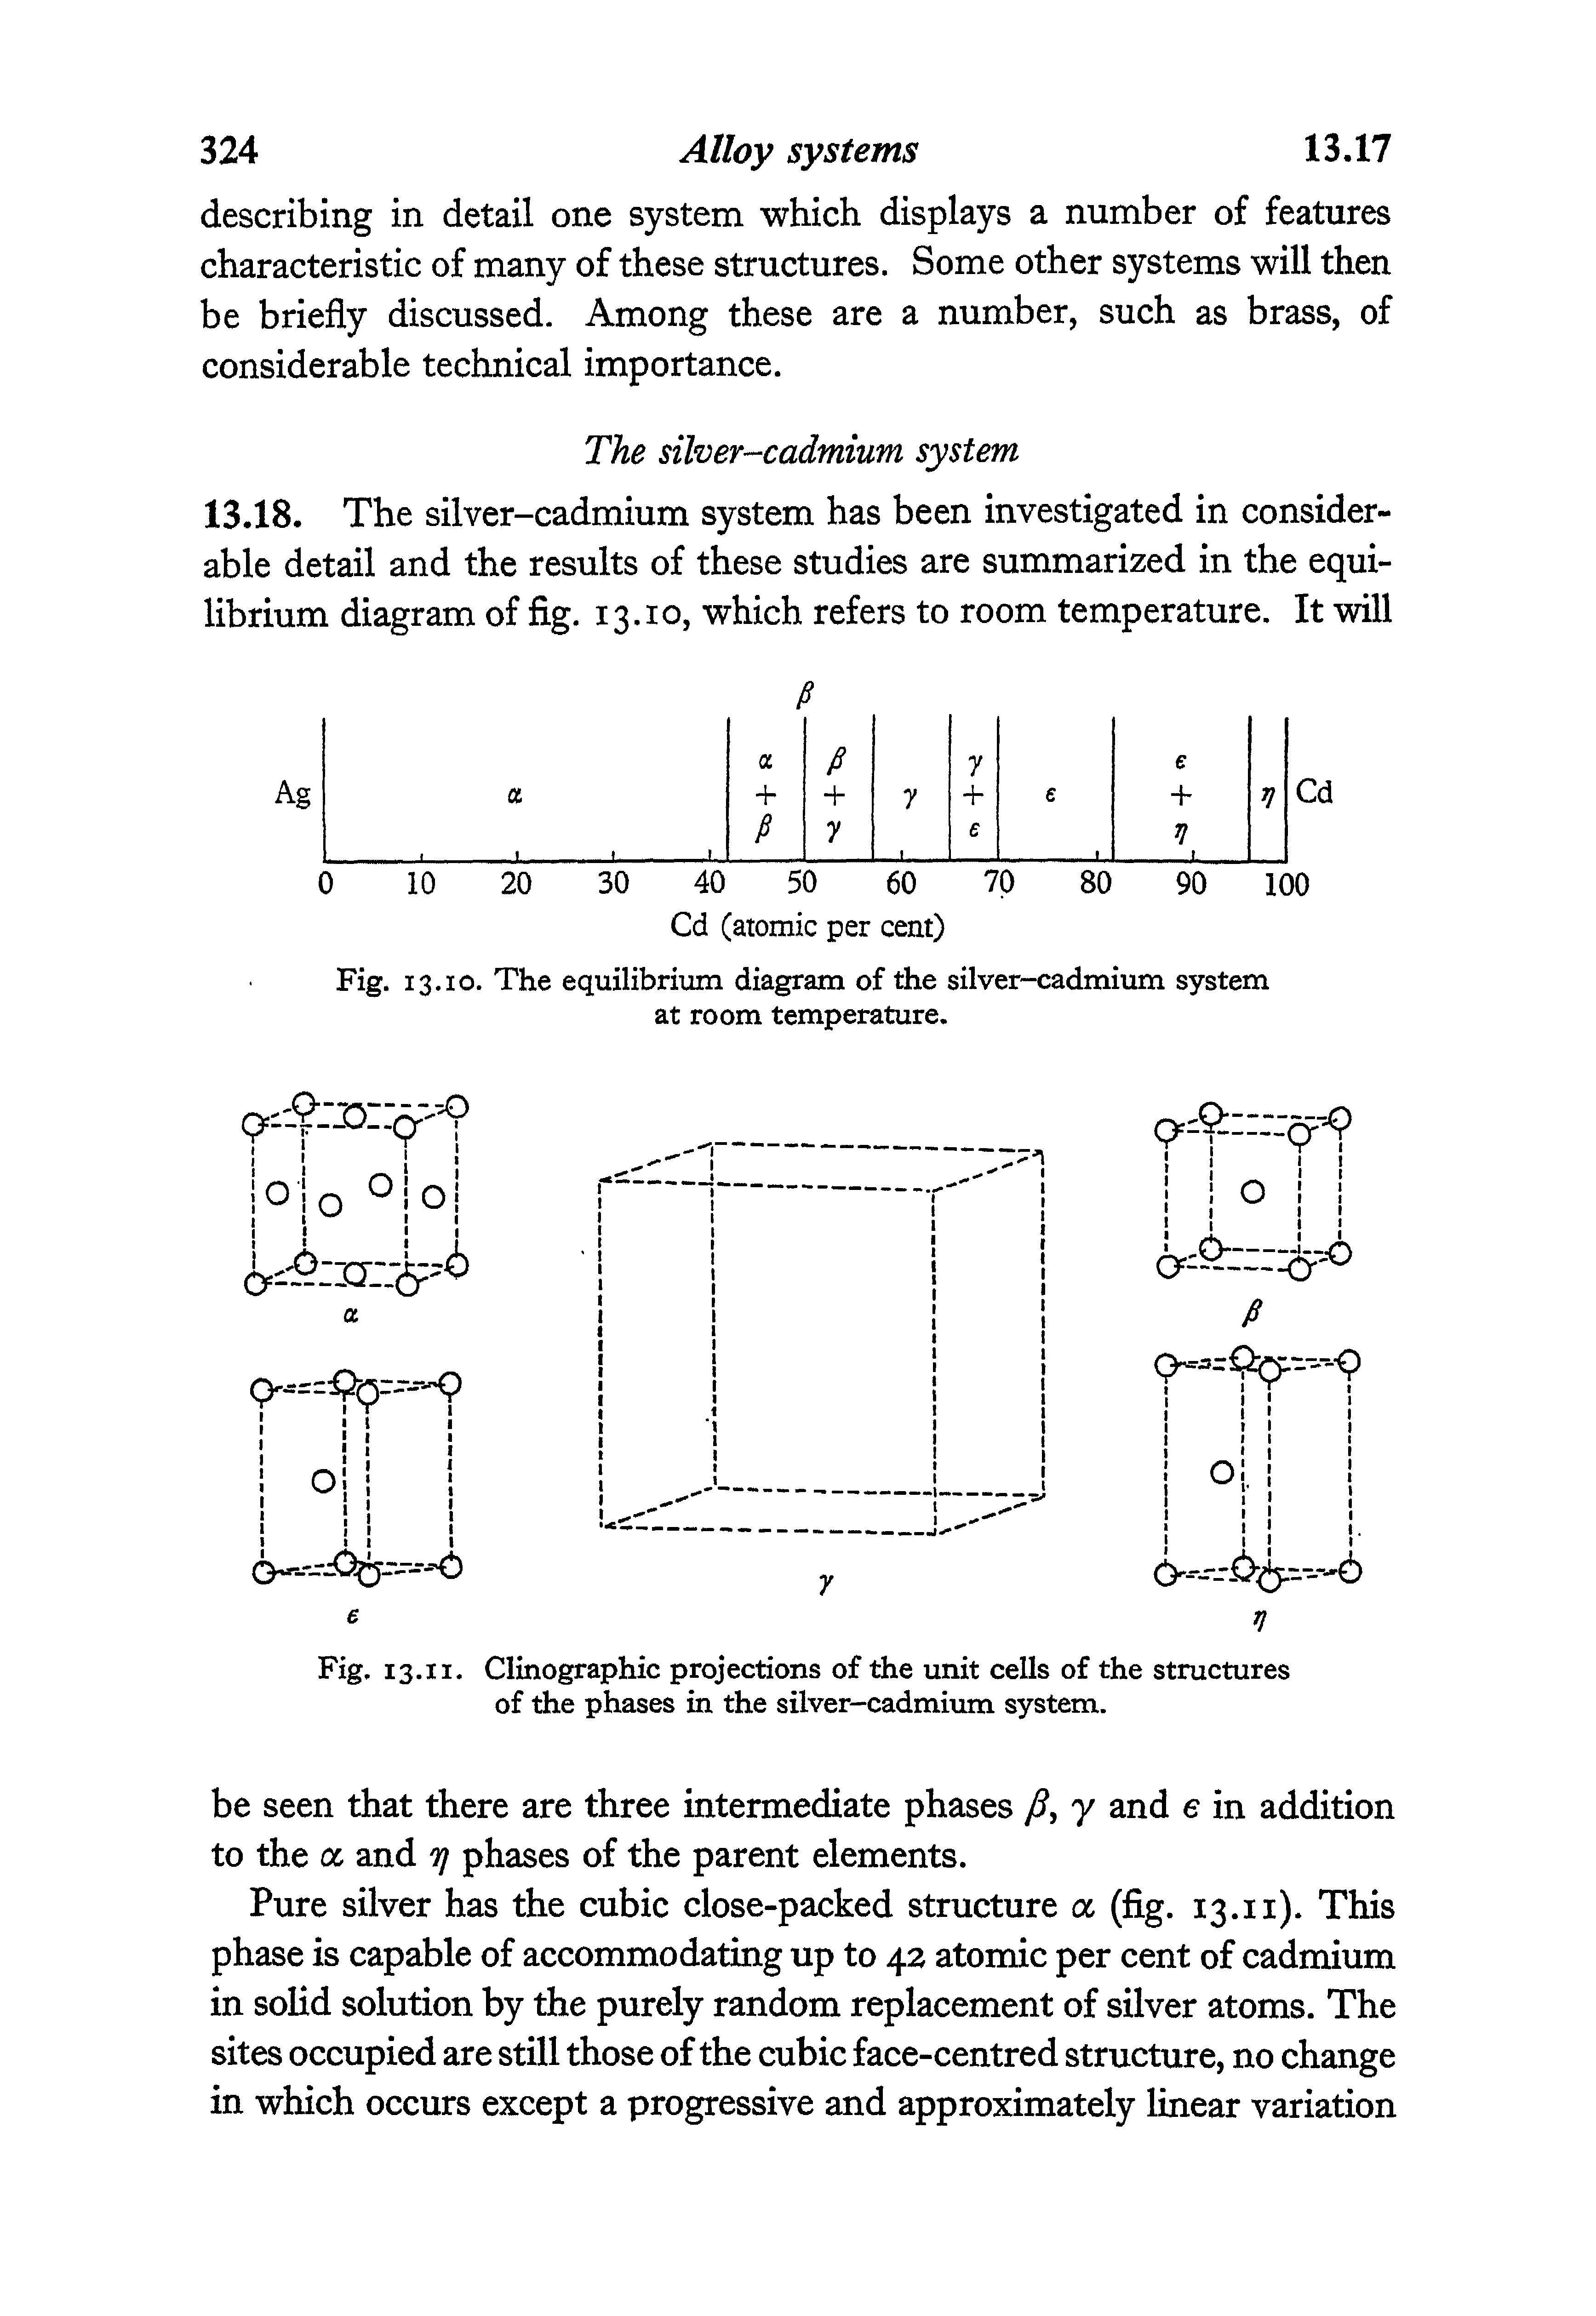 Fig. 13.10. The equilibrium diagram of the silver-cadmium system at room temperature.